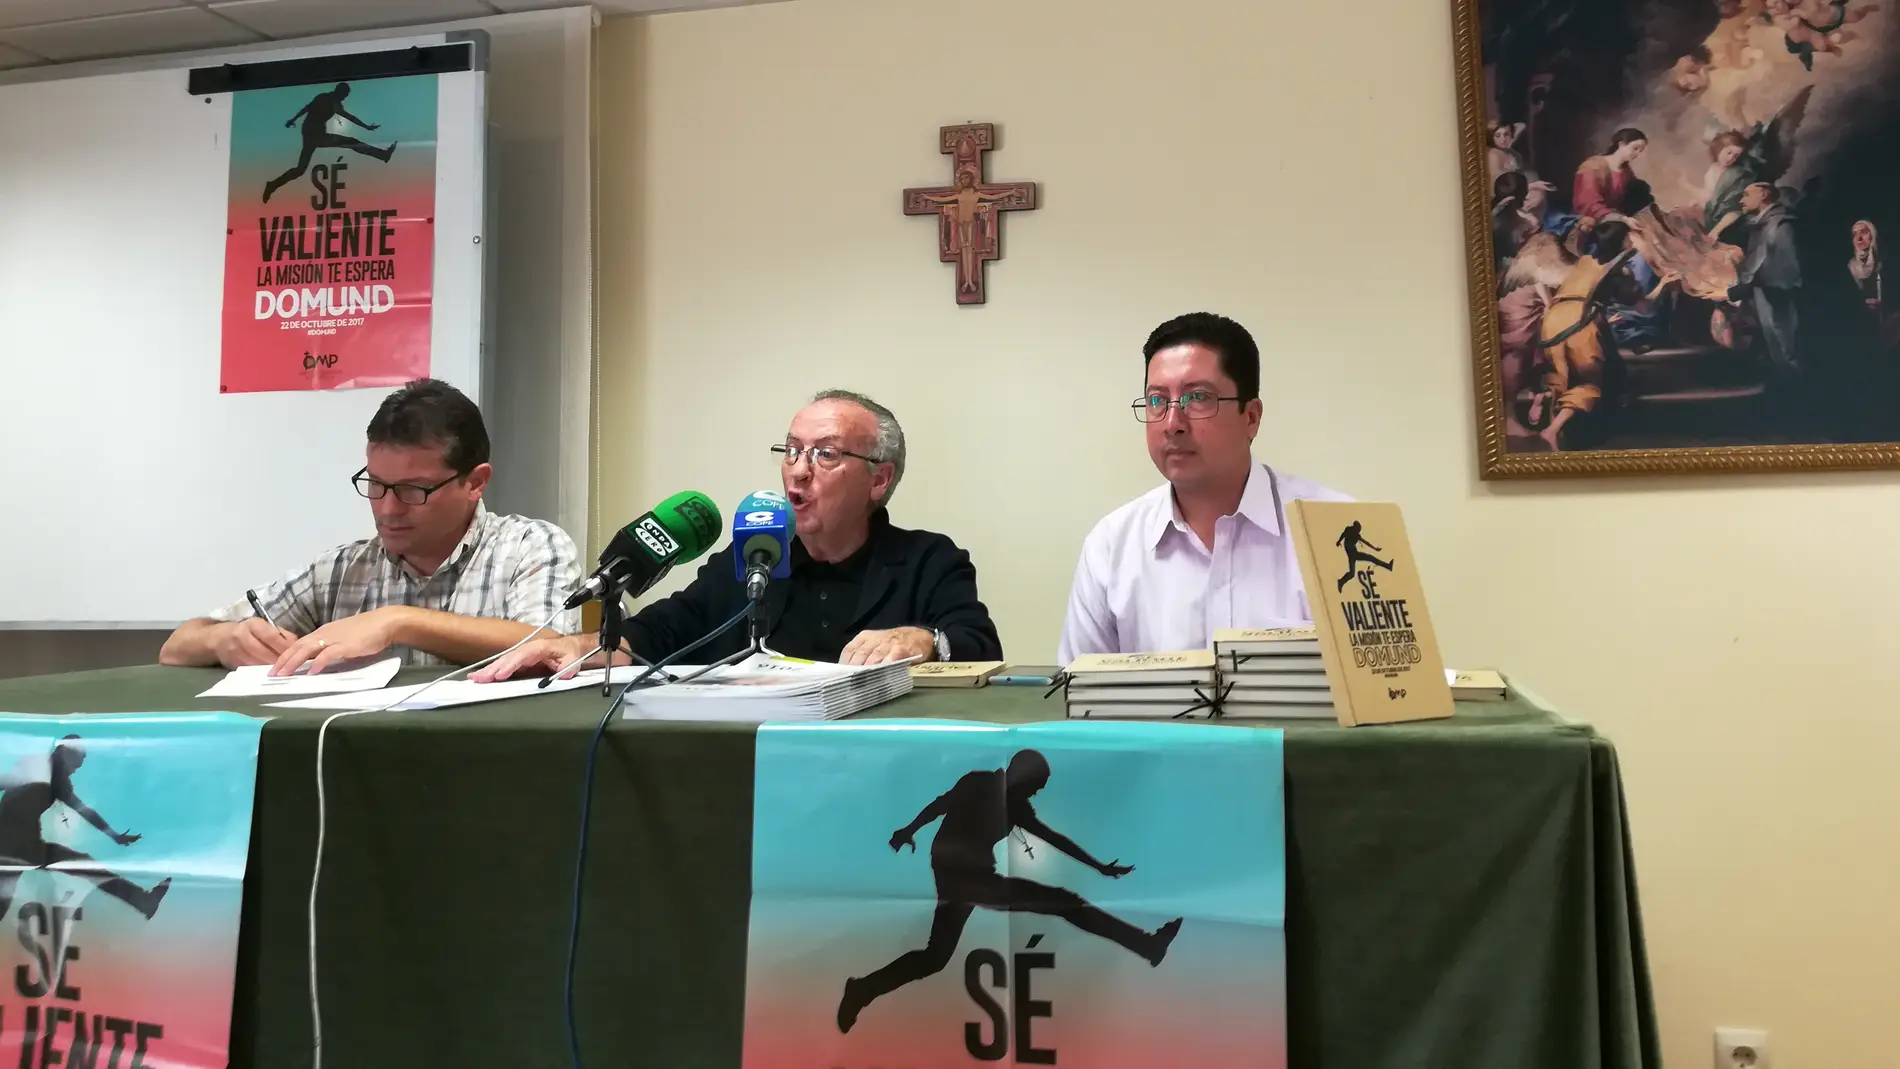 El delegaado de misiones de la Diócesis de Segovia junto con dos misioneros presenta el DOMUND 2017